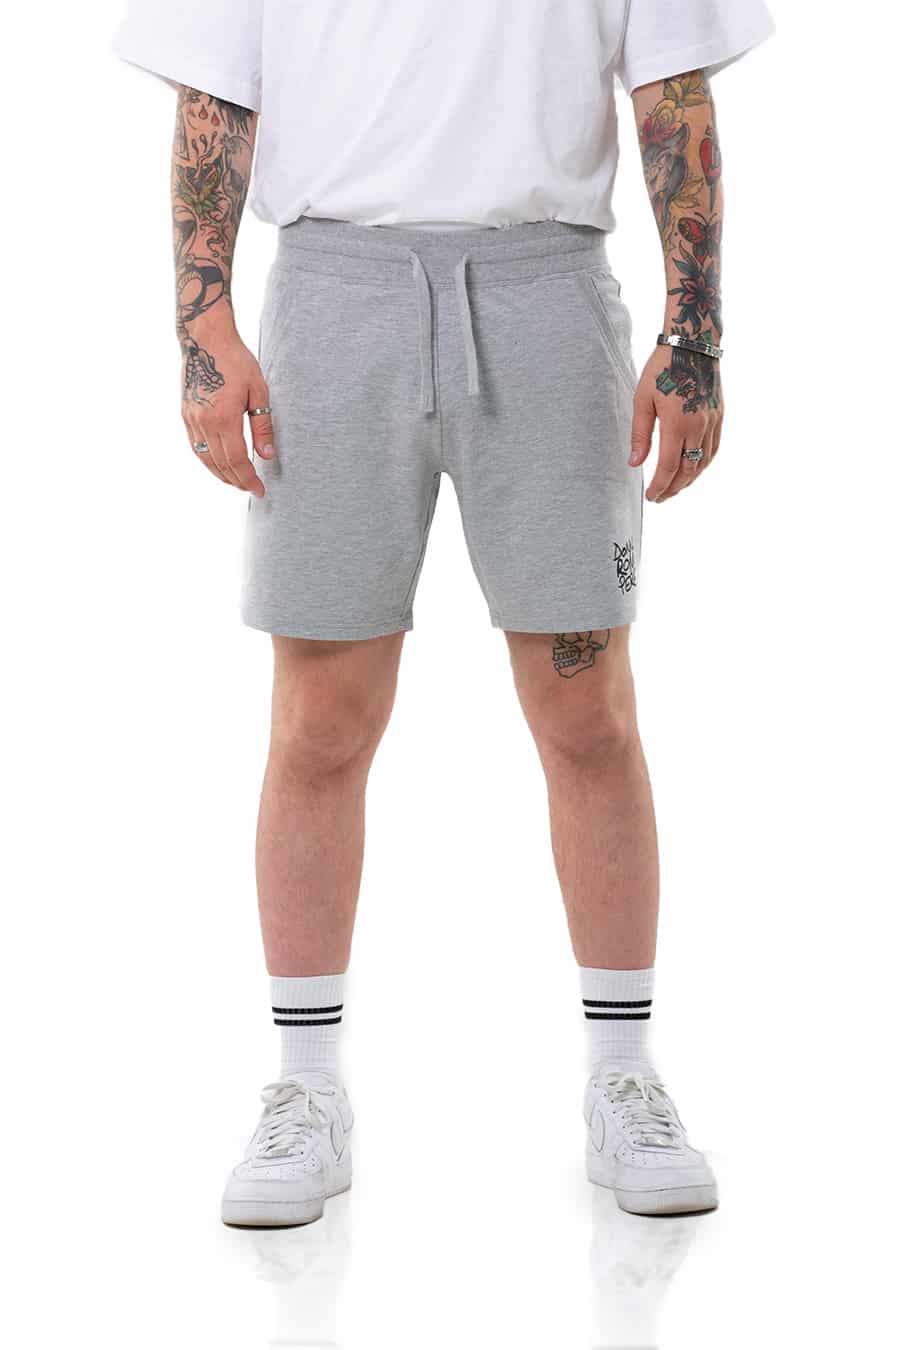 Doodle Jogger Cut Shorts - [Grey] - Men